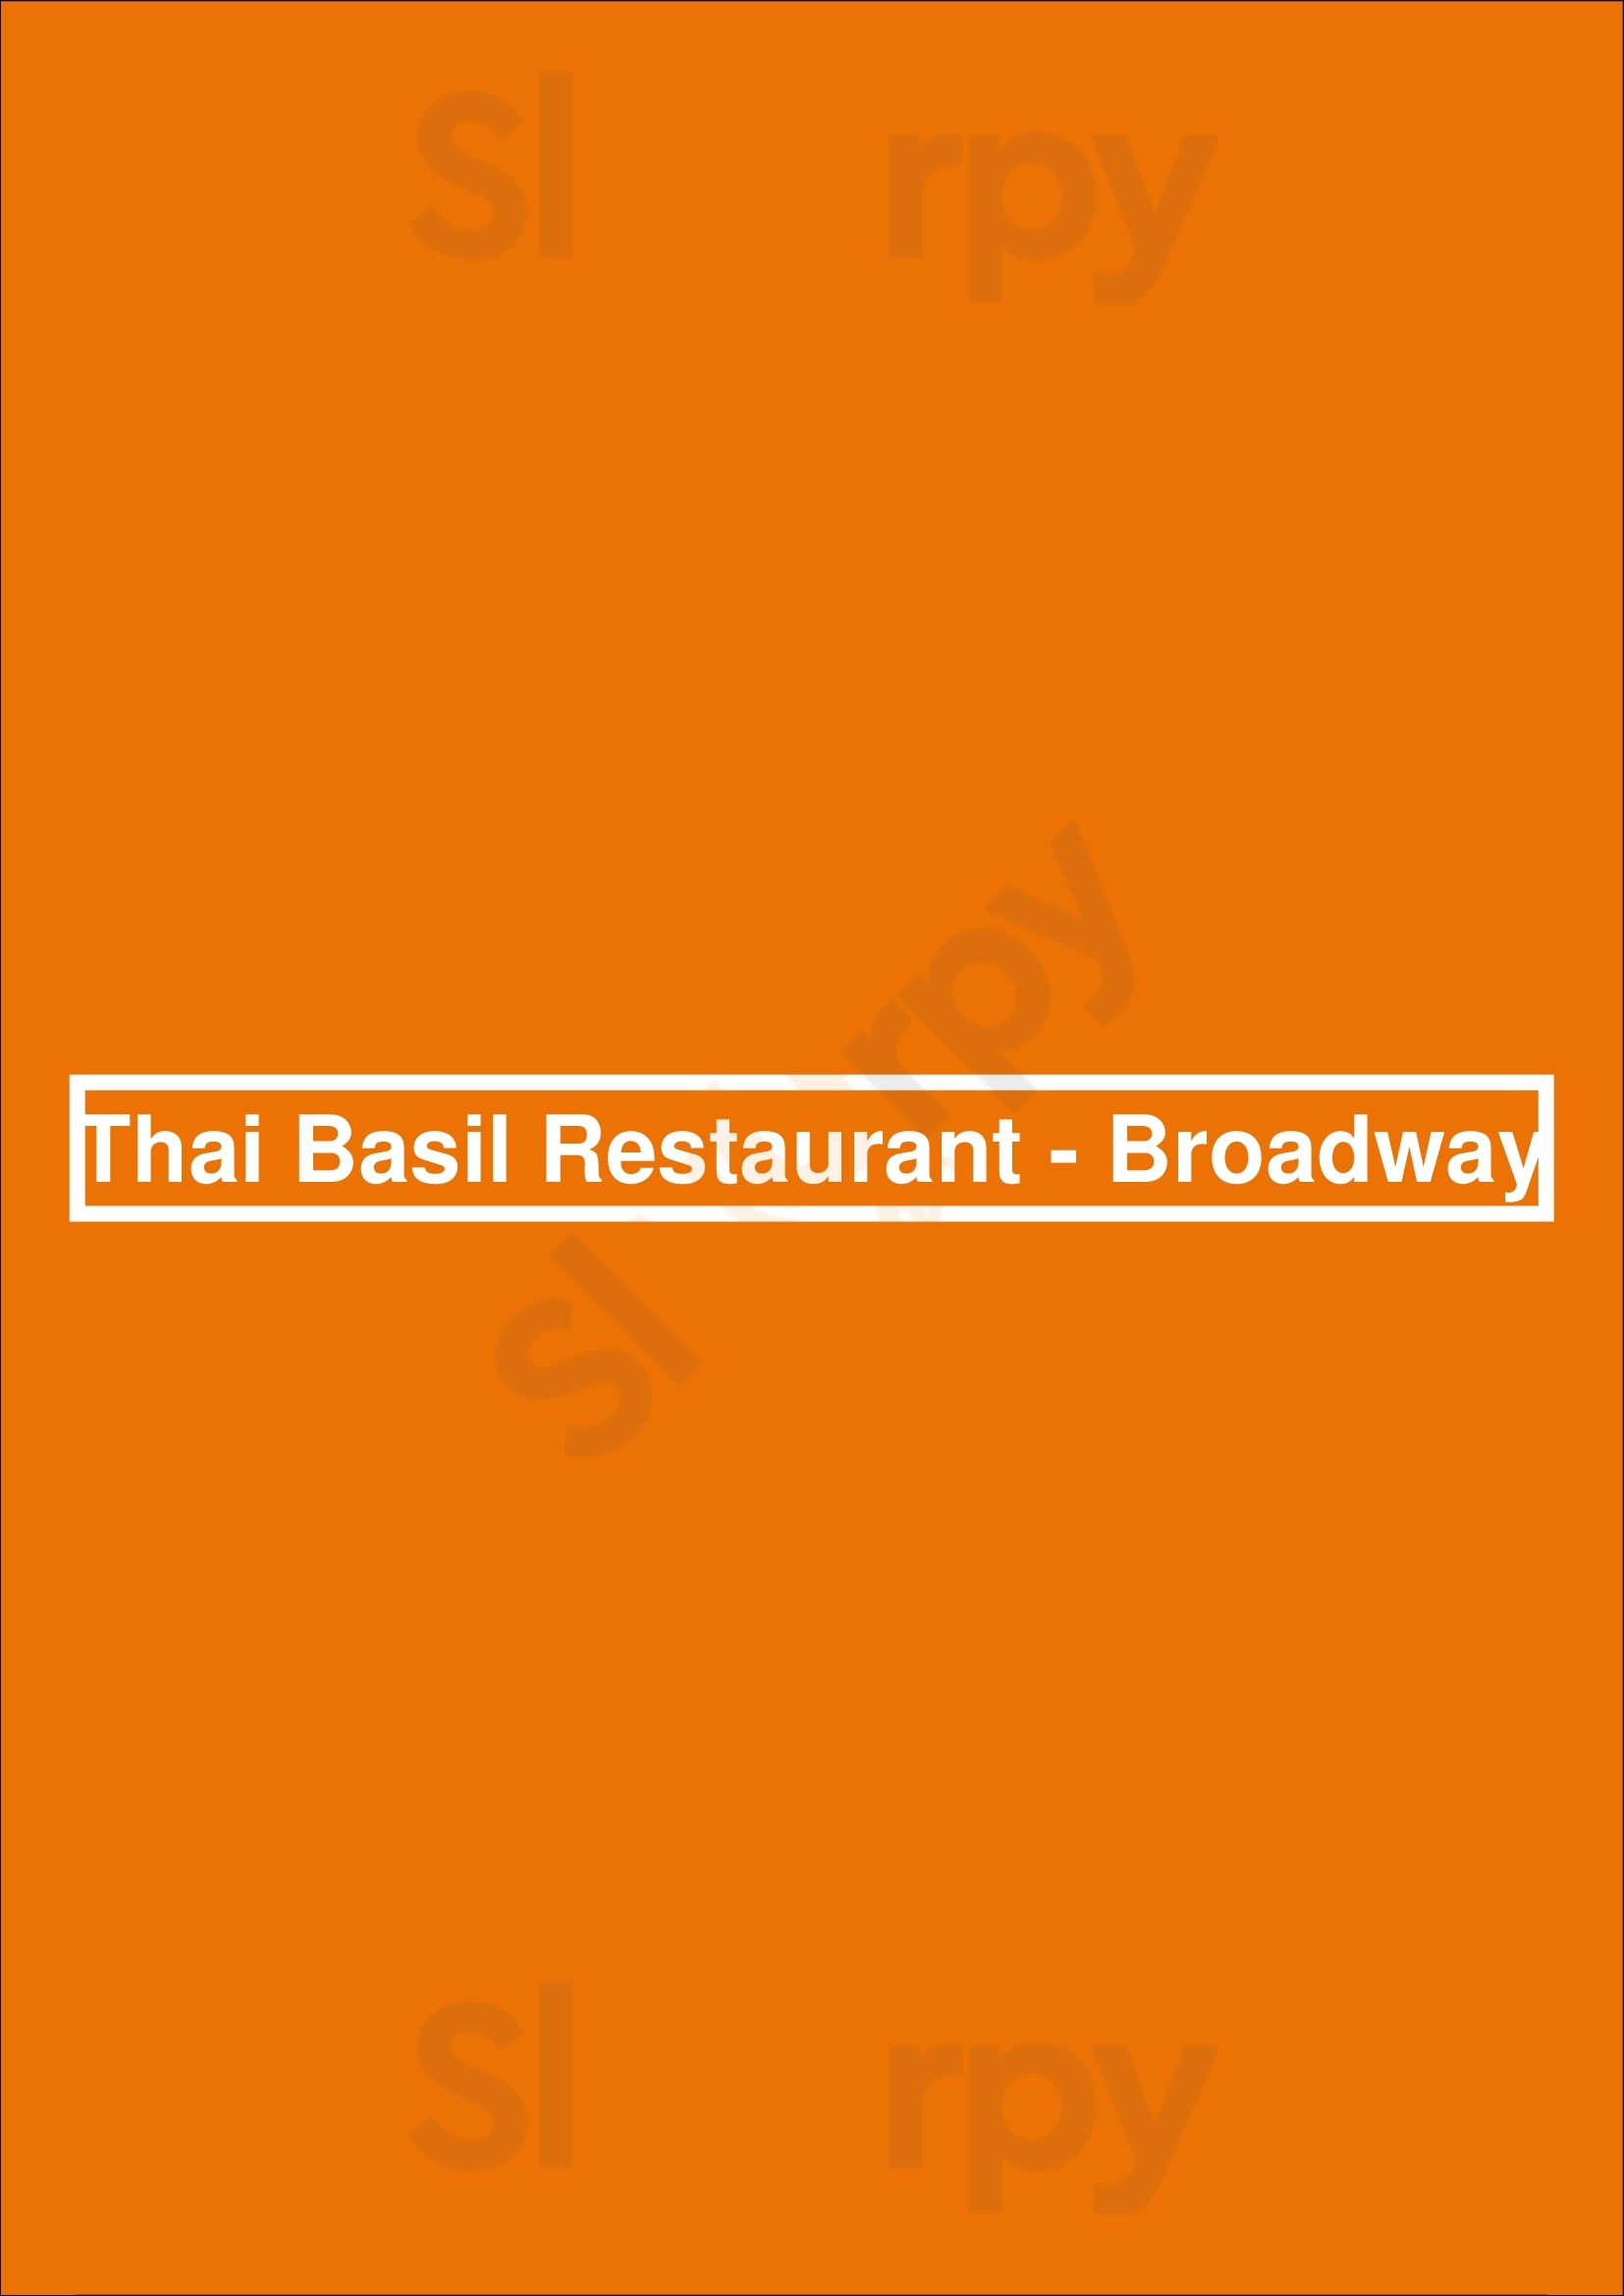 Thai Basil Restaurant - Broadway Vancouver Menu - 1